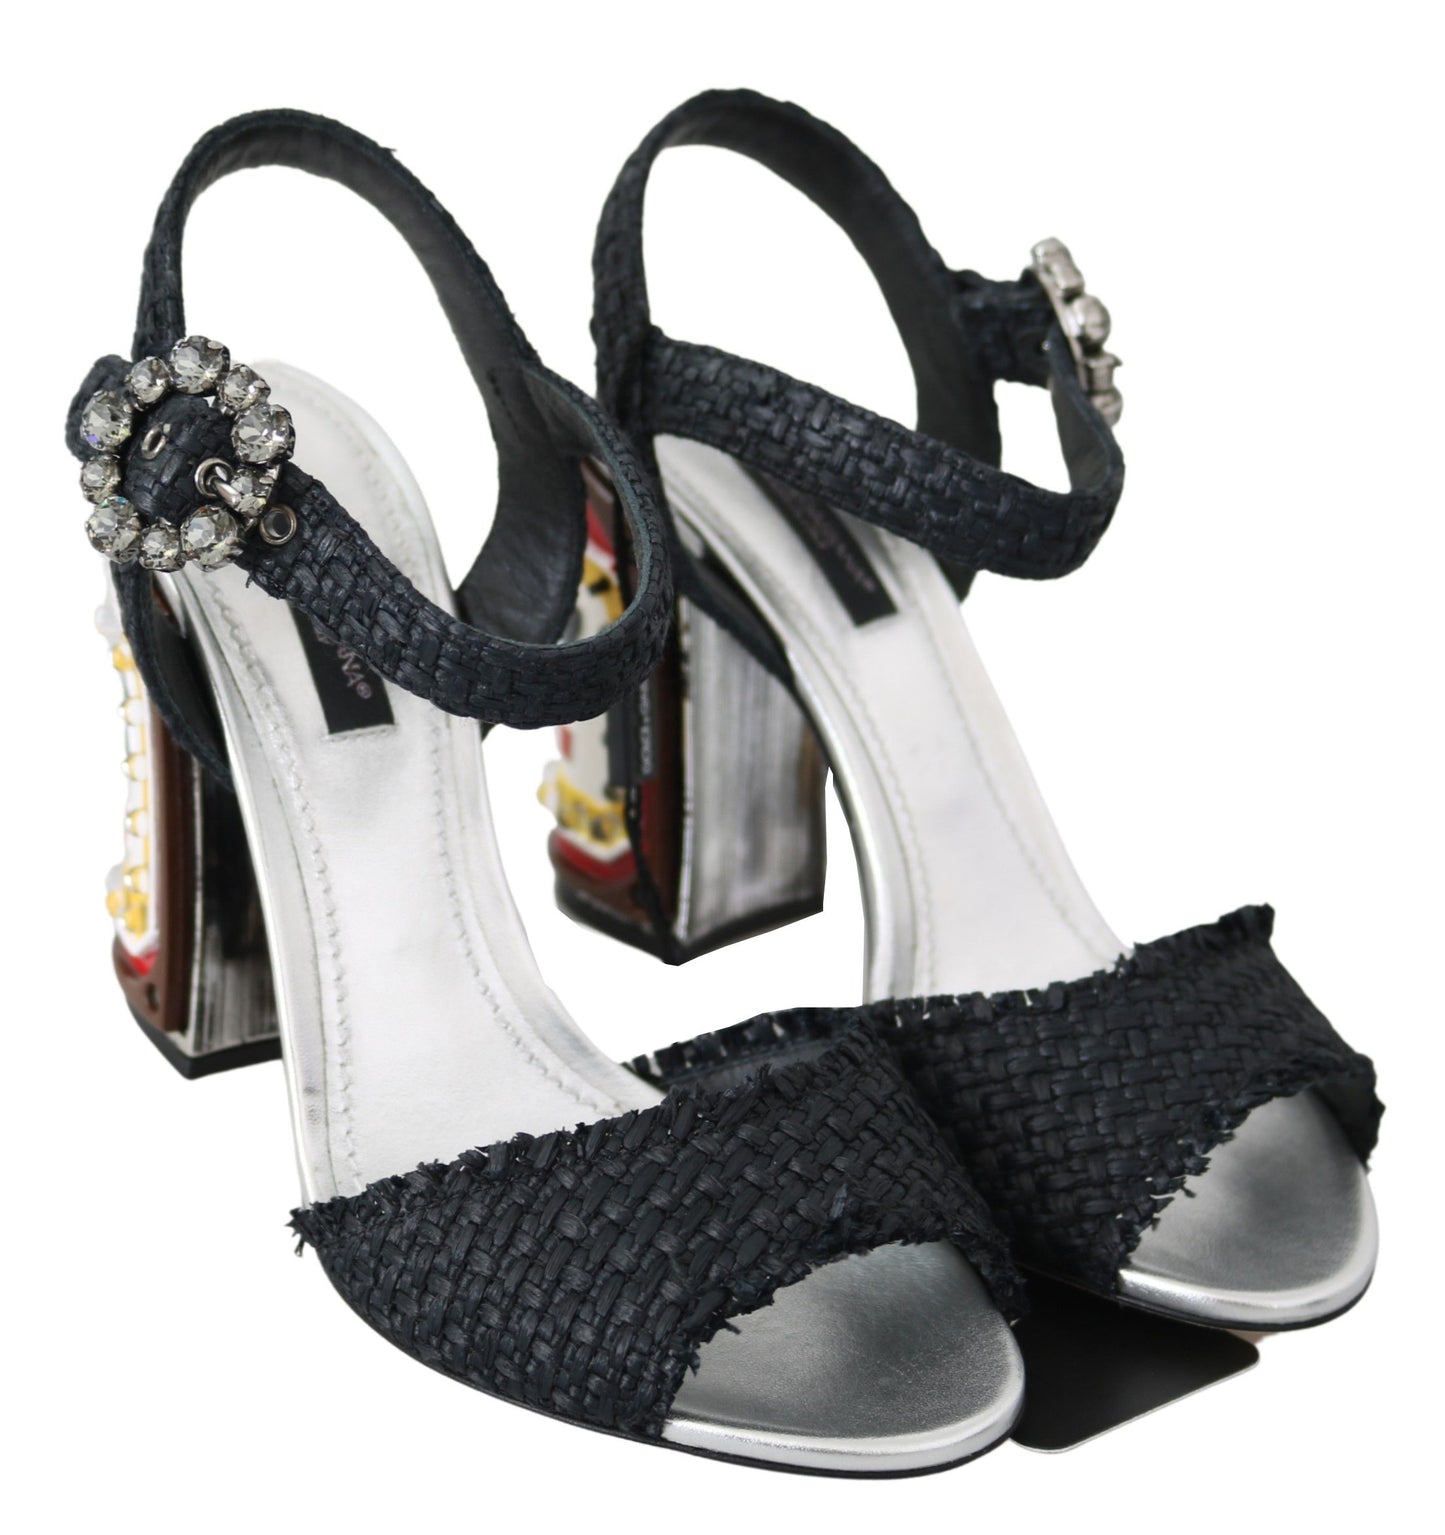 Elegant Black Ankle Strap Sandals with LED Lights